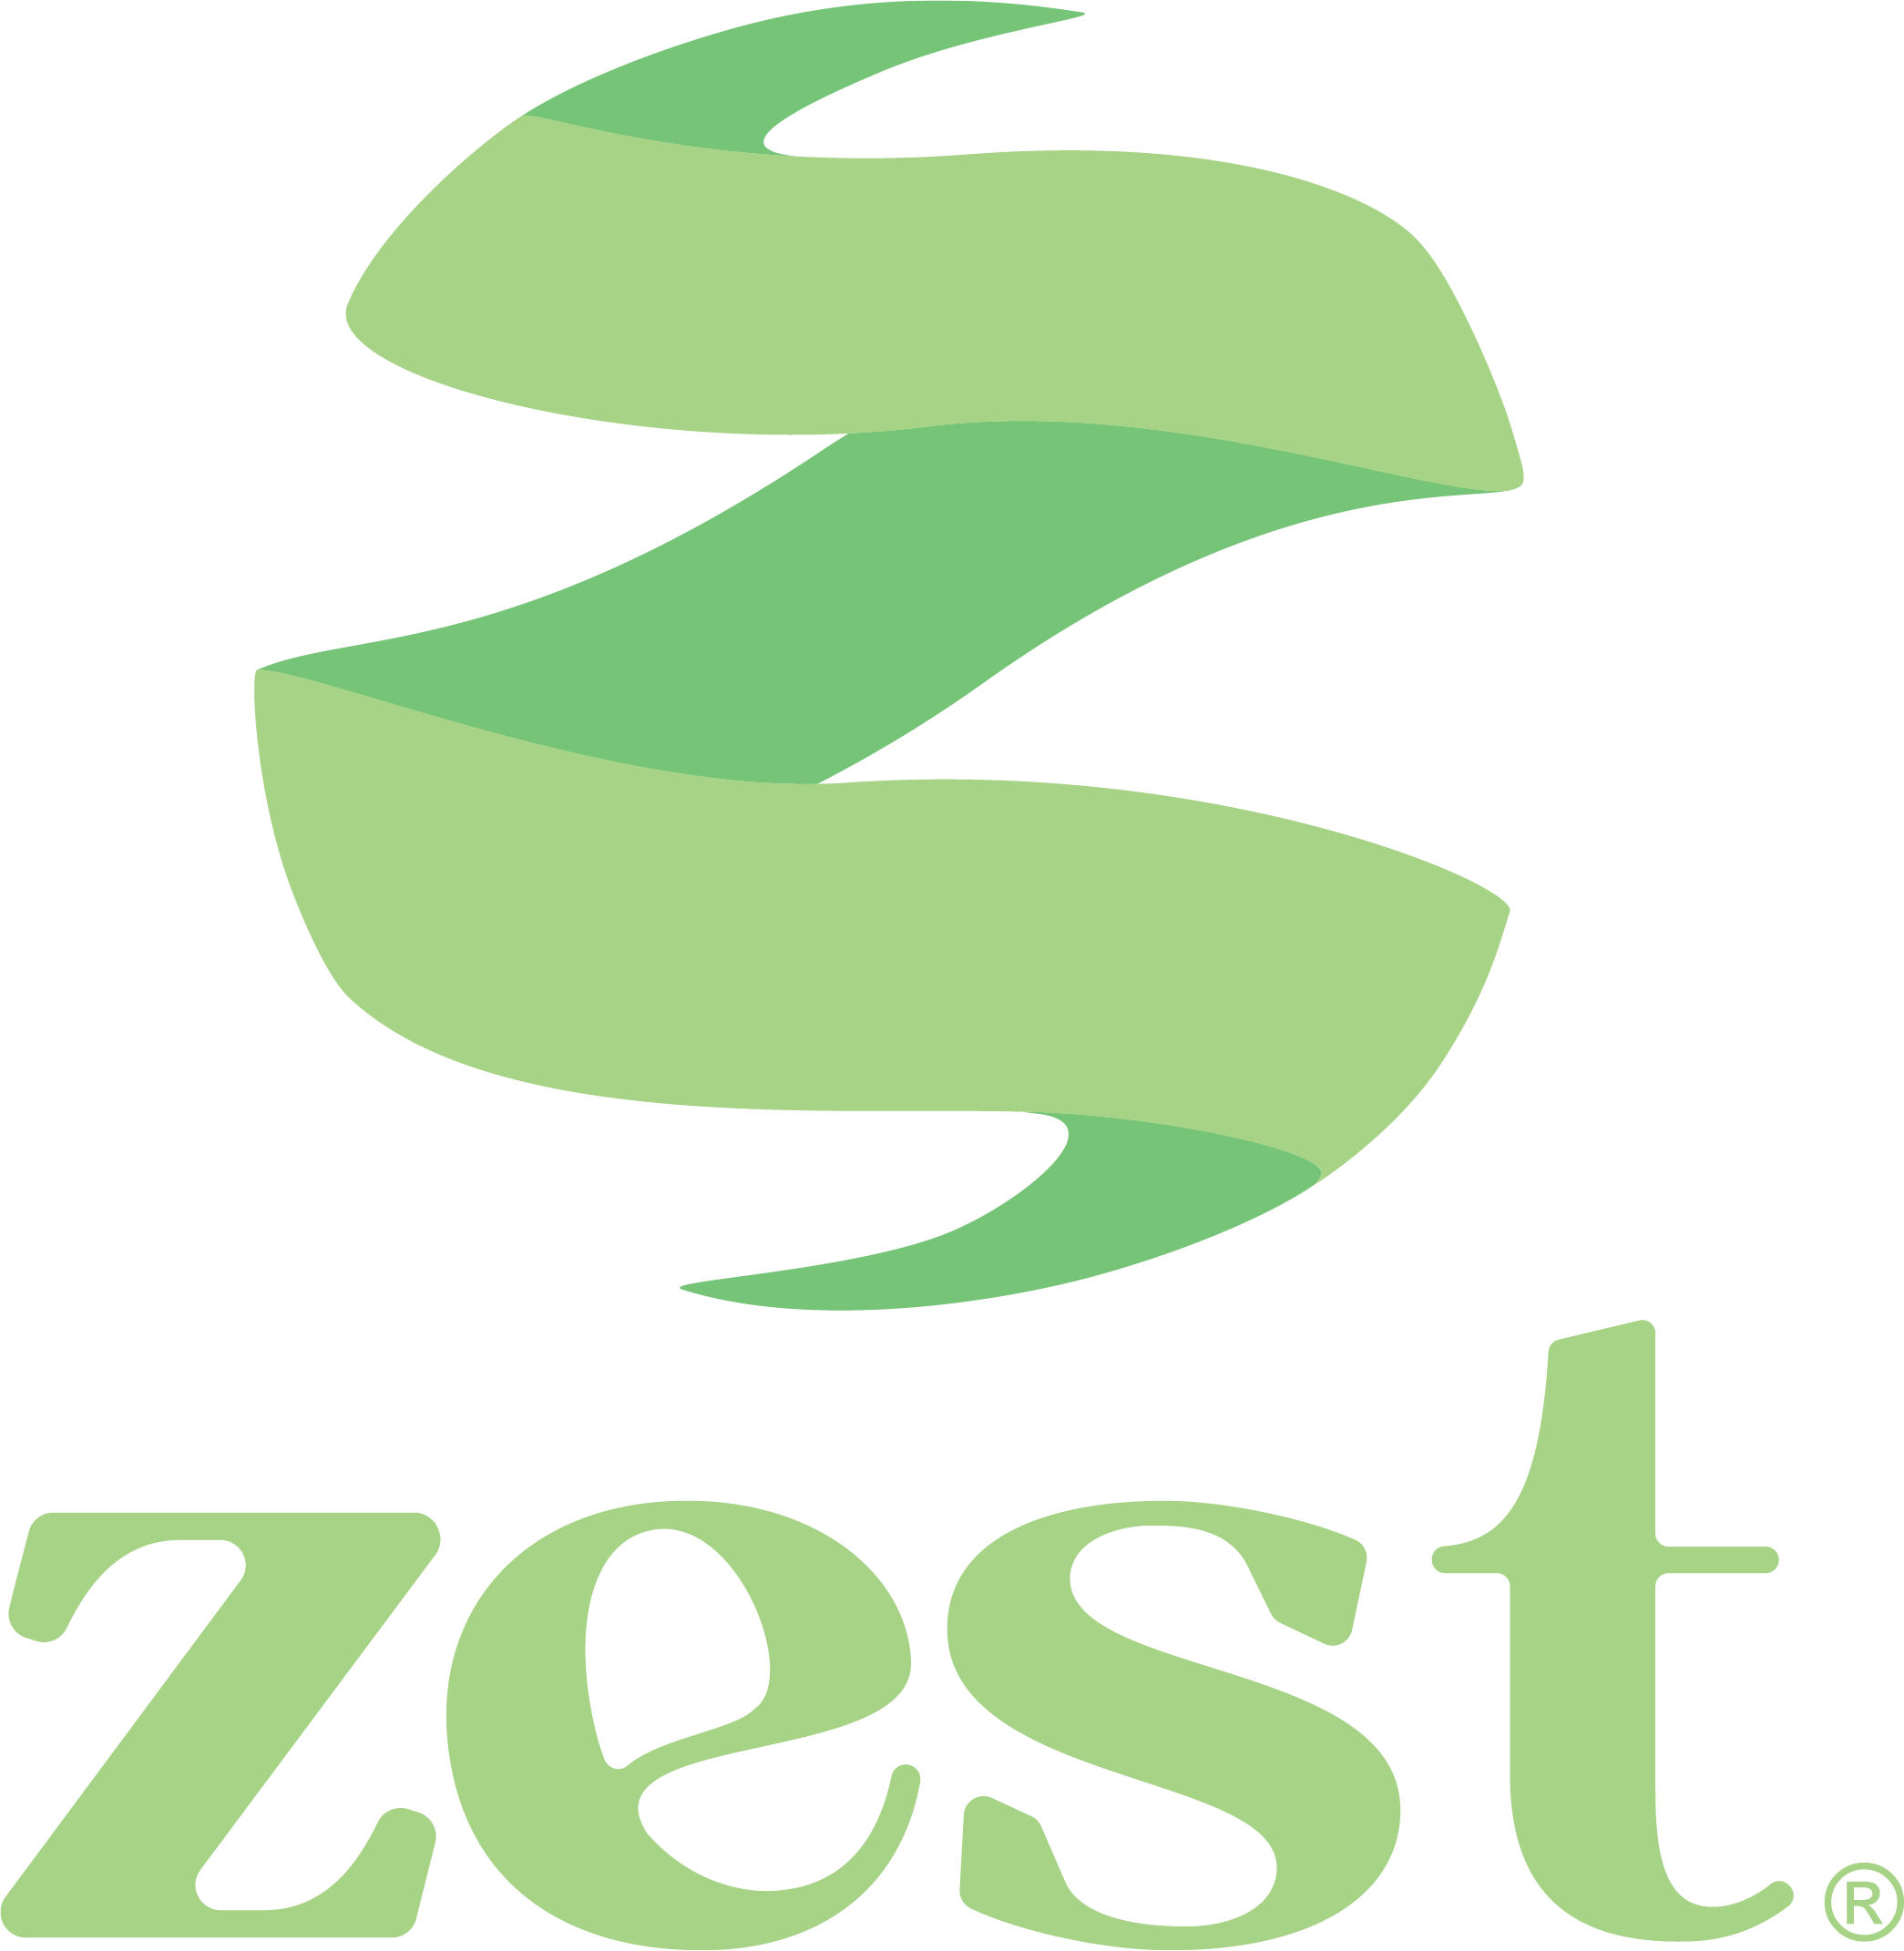 Zest garden products logo.